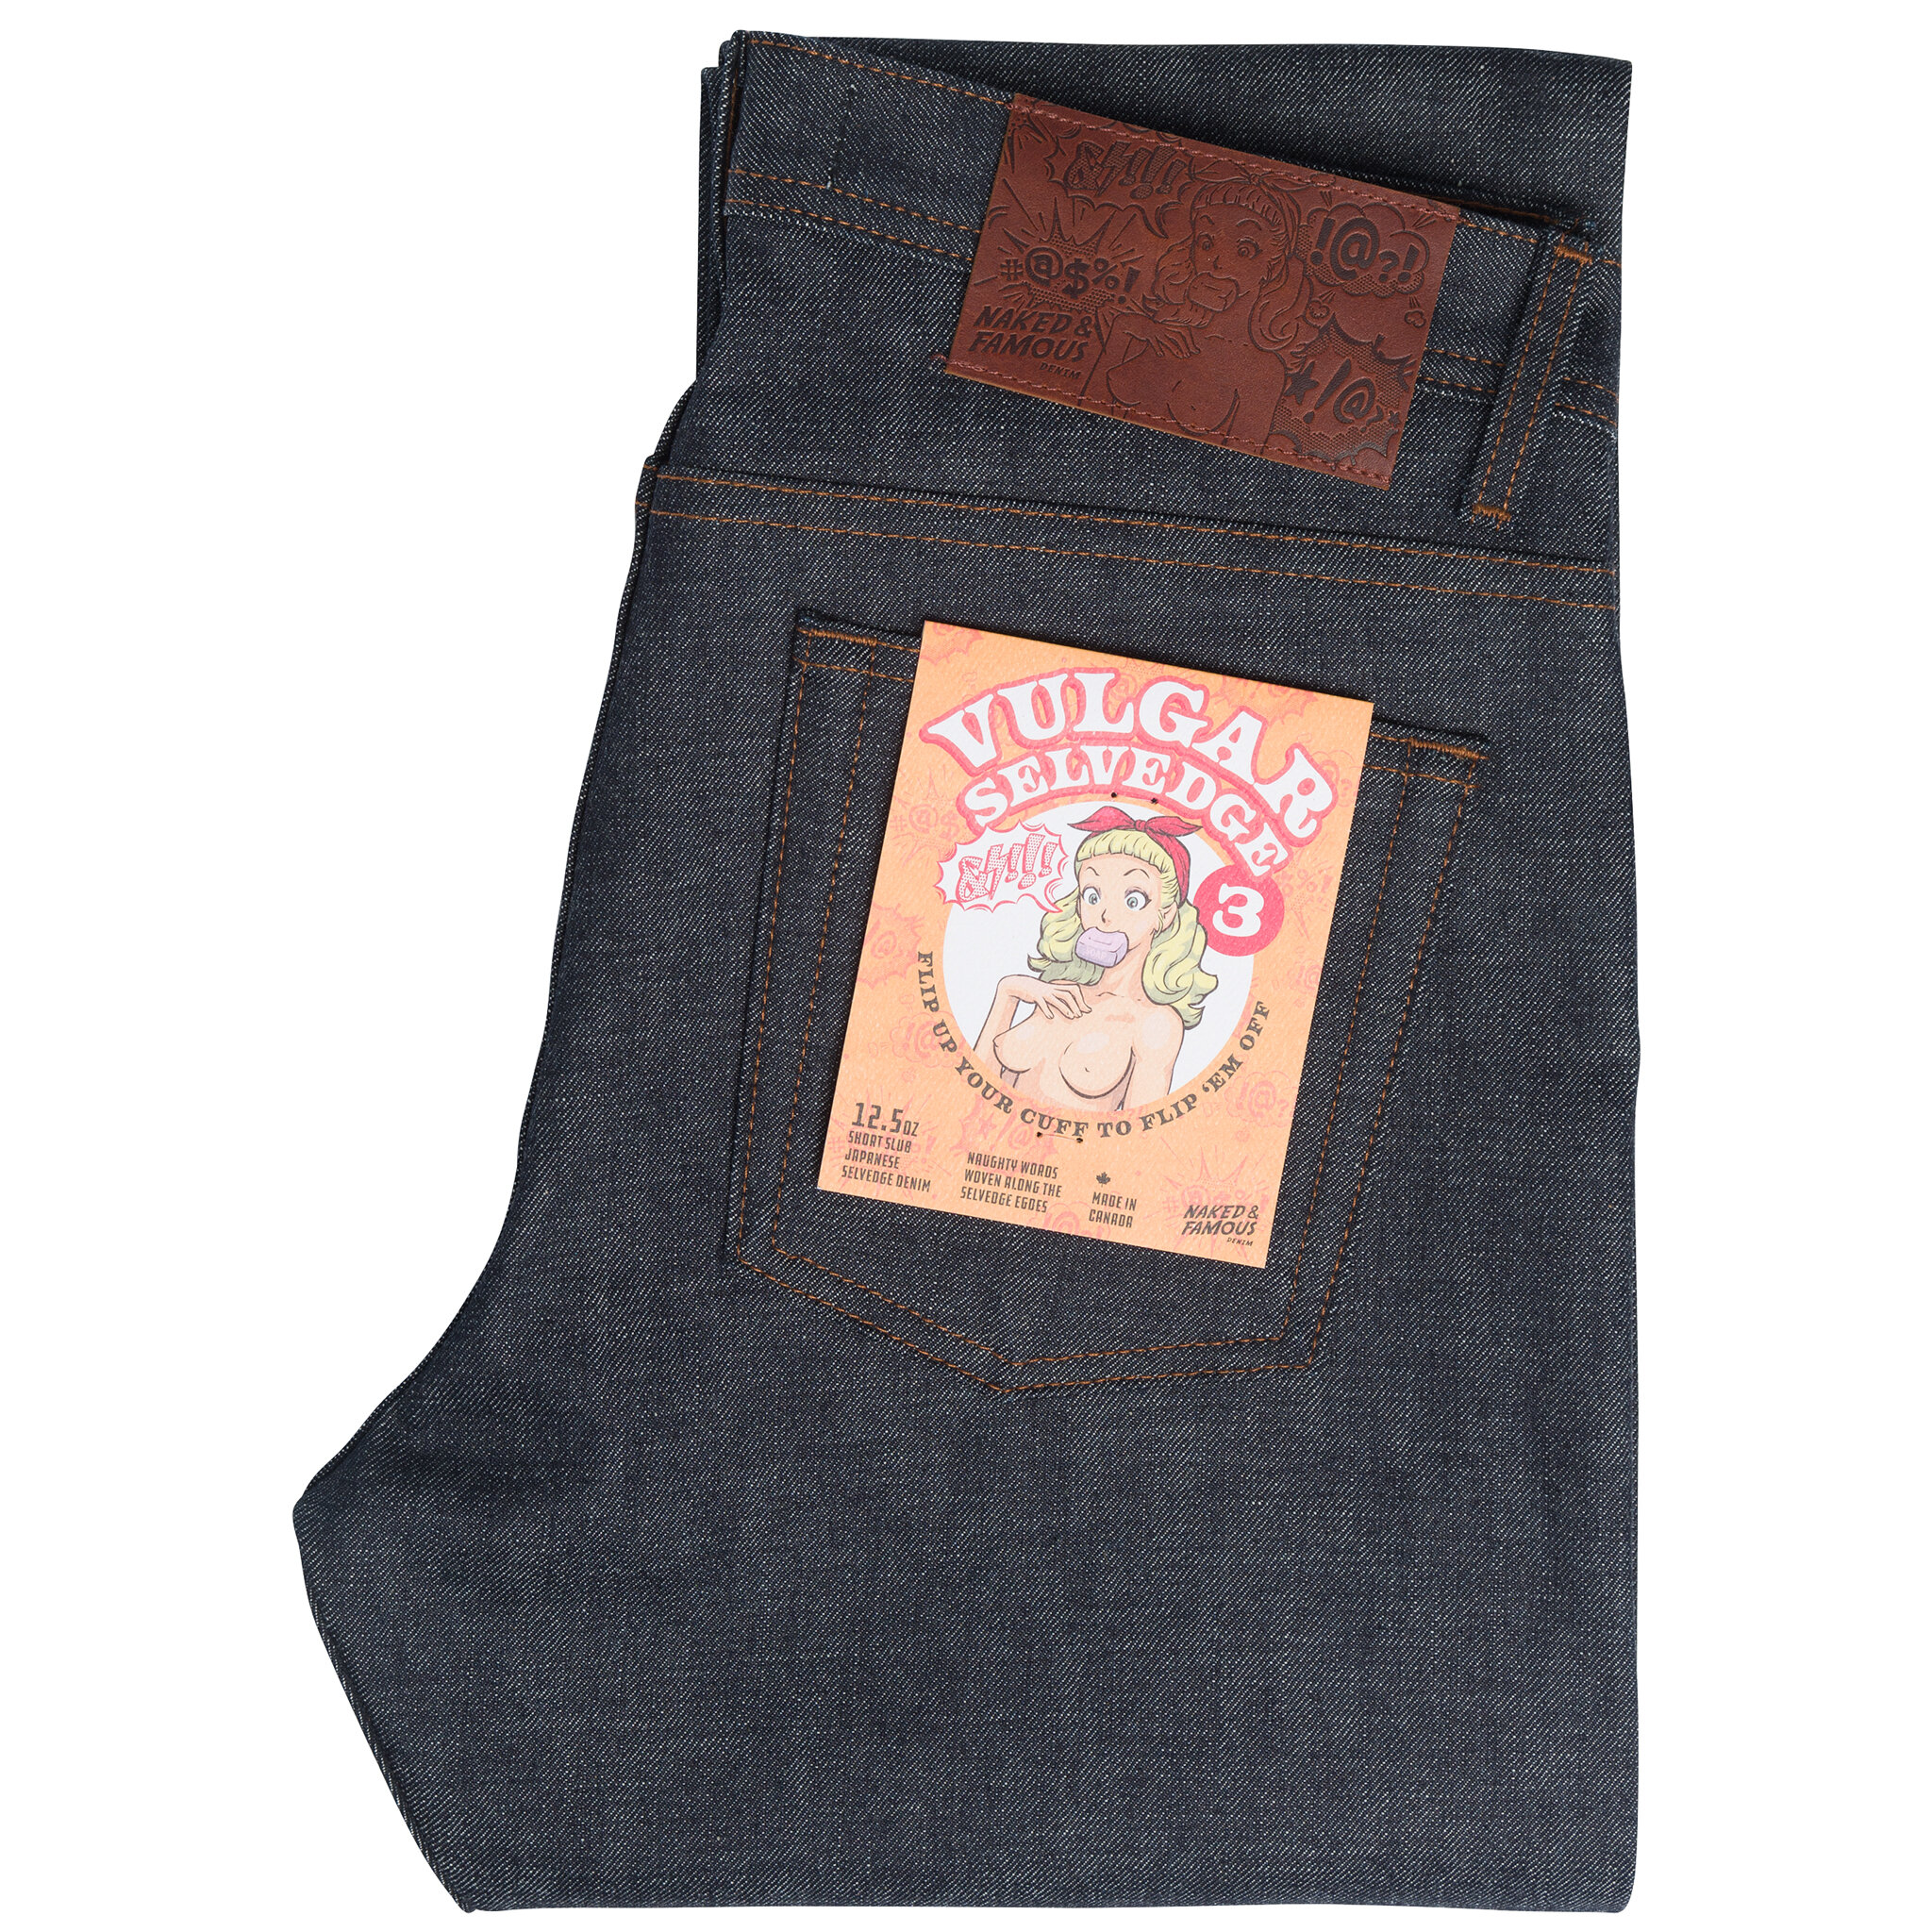  Vulgar Selvedge 3 jeans - folded 